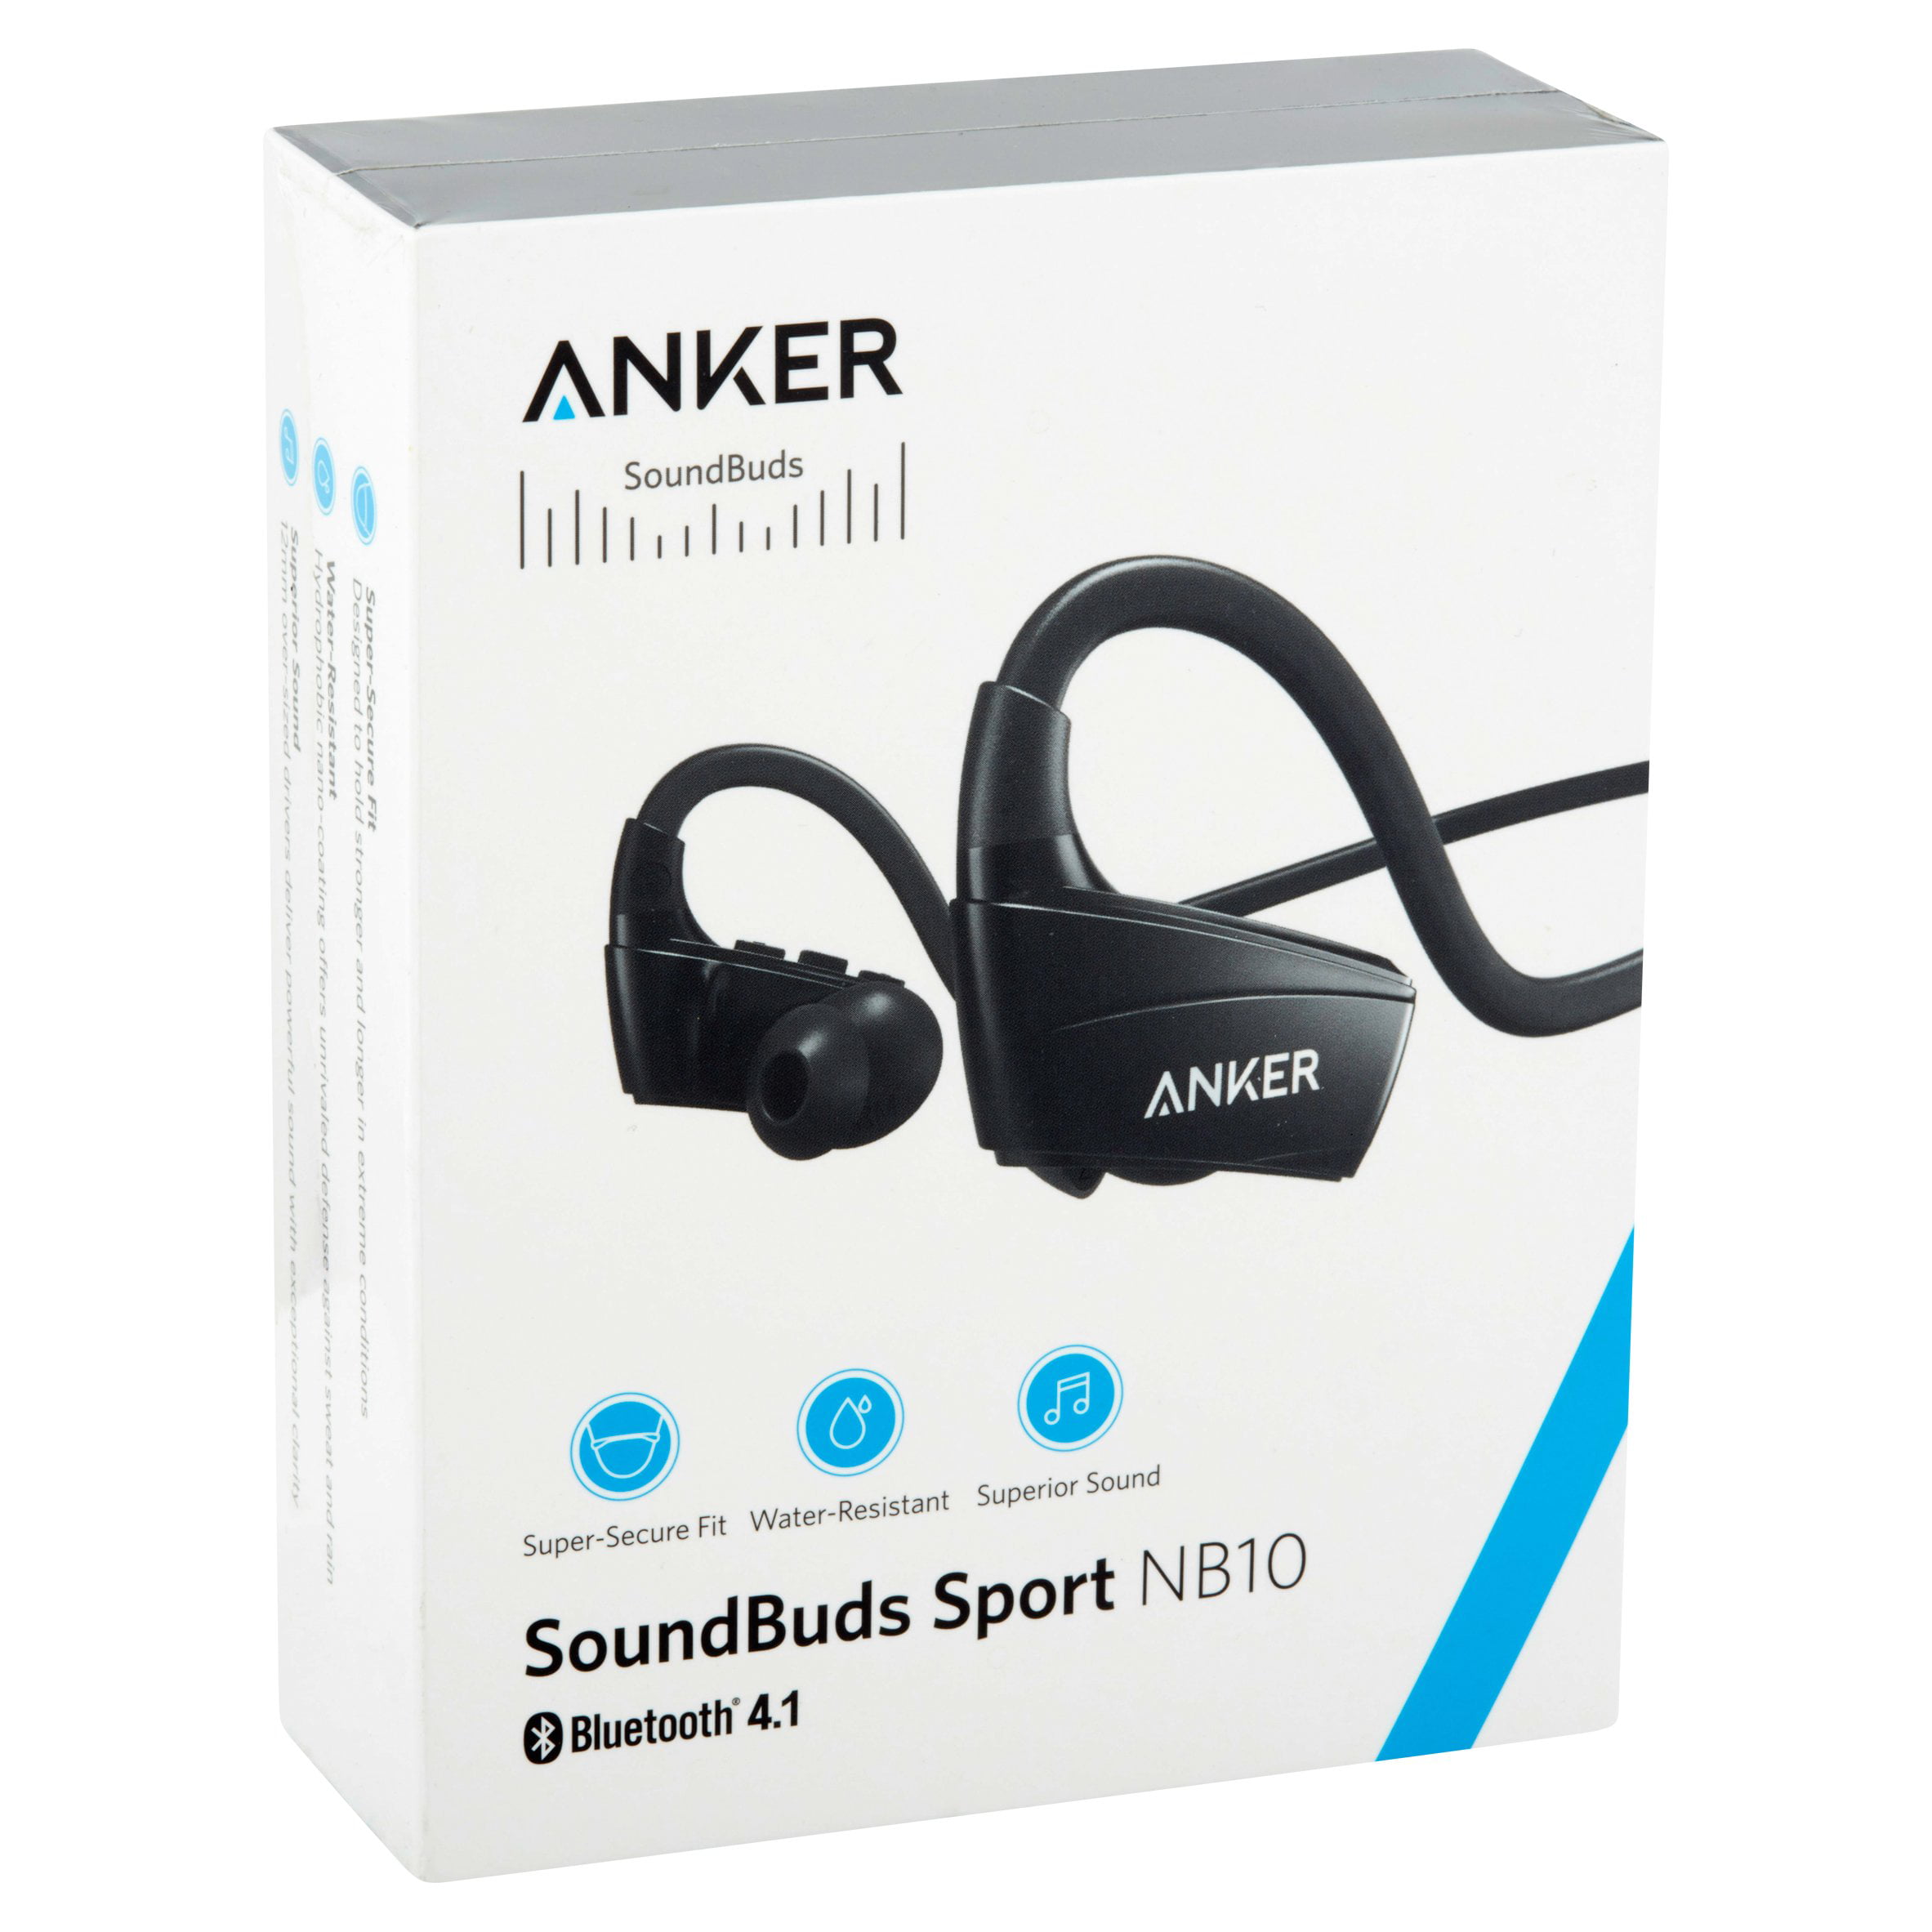 Anker SoundBuds Bluetooth Earbuds, Black - Walmart.com